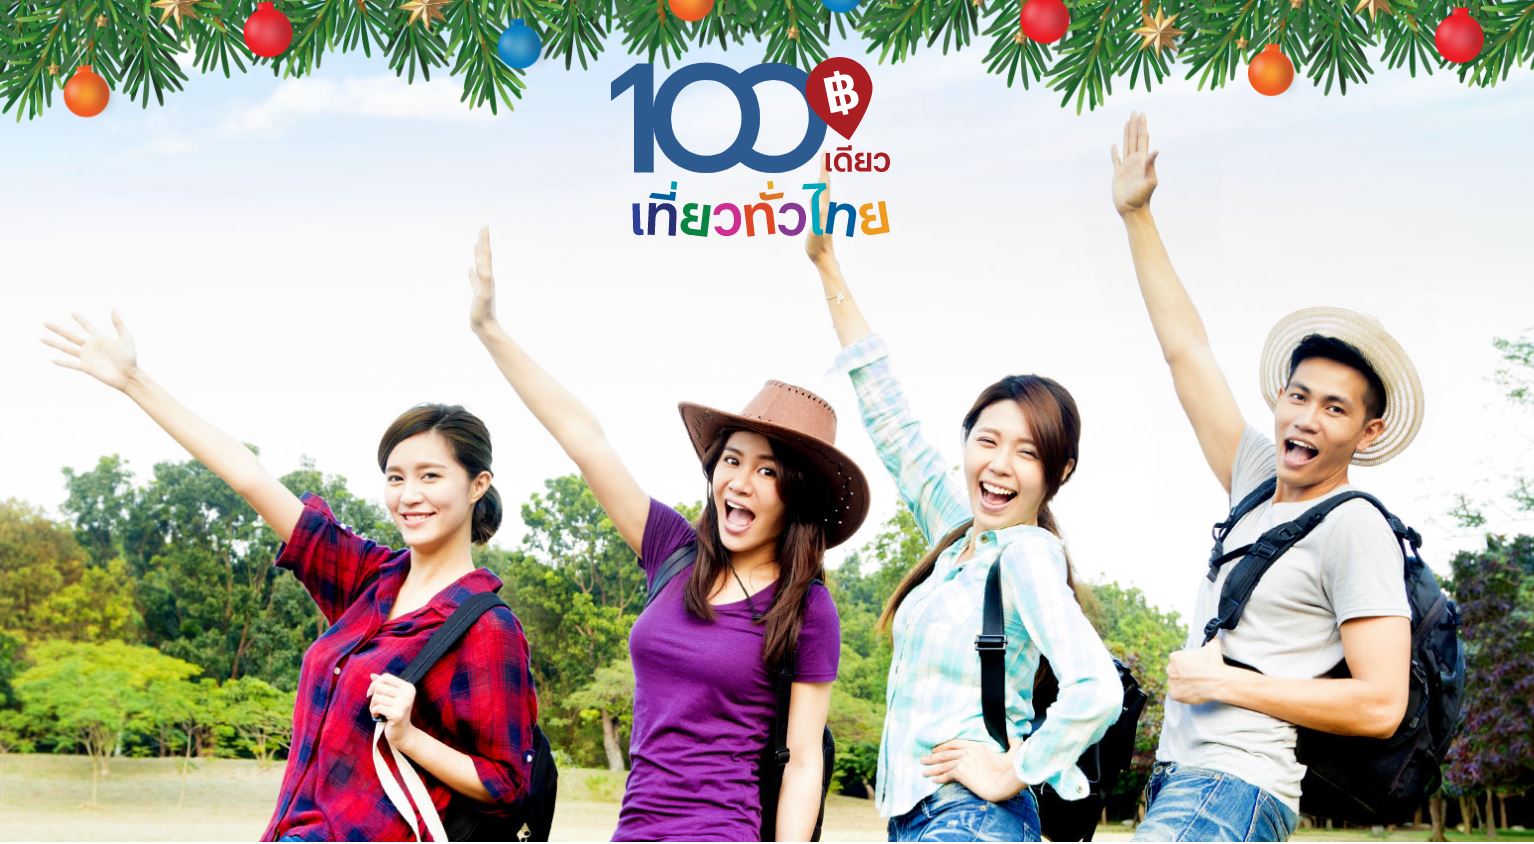 100 เดียวเที่ยวทั่วไทย โอเอซิสสปา (สำหรับผู้กดรับสิทธ์เดือน ธันวาคม)